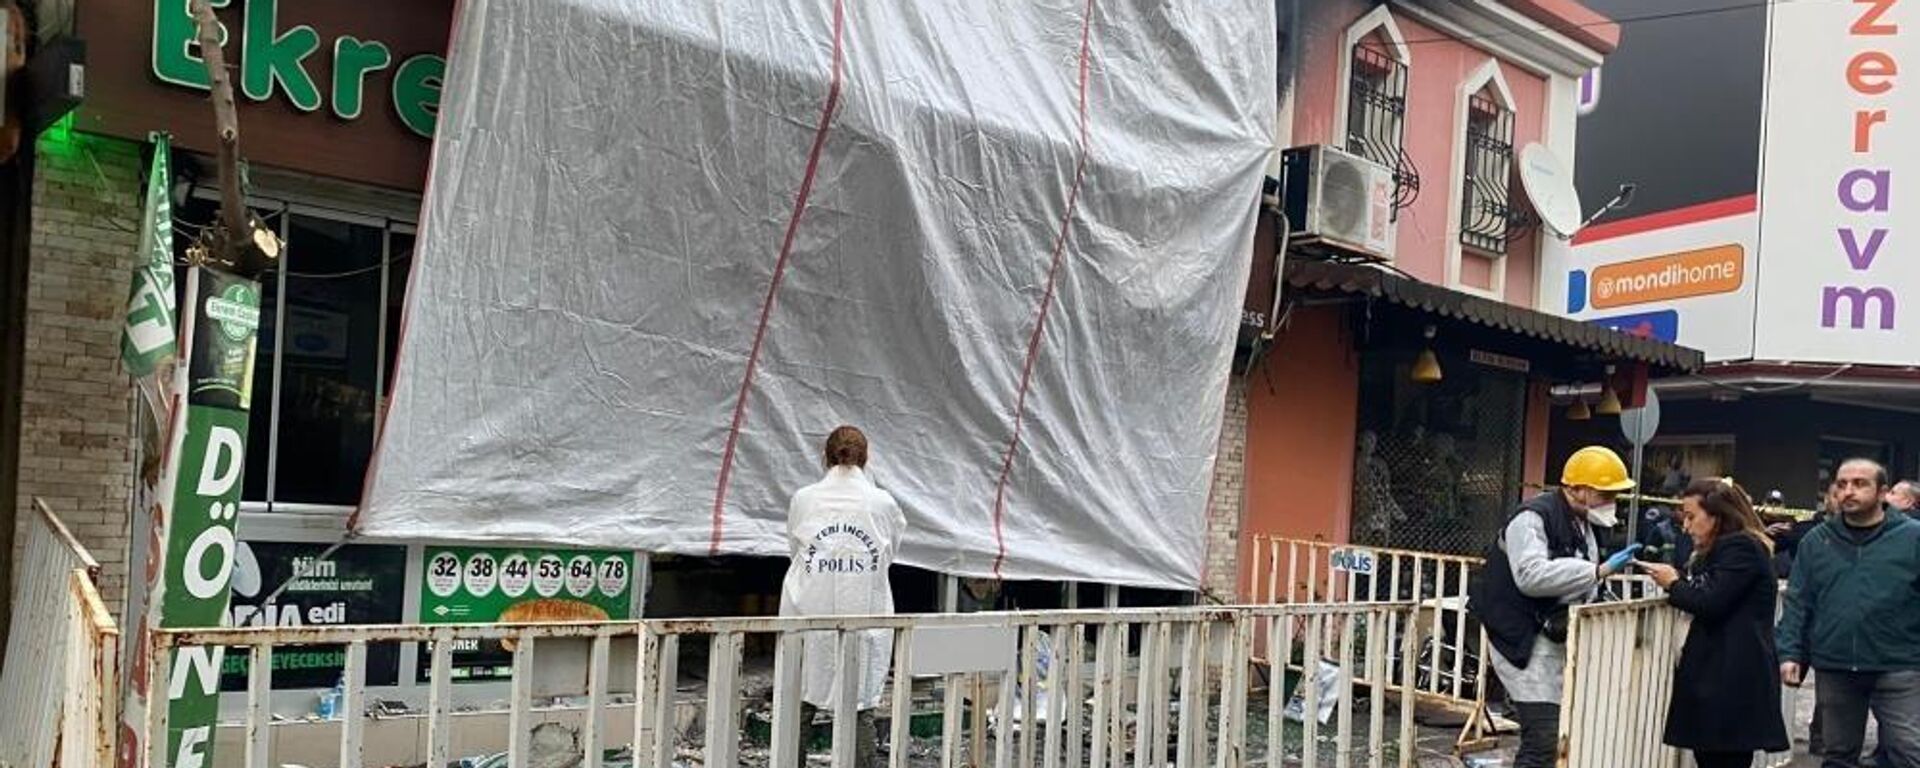 Aydın Nazilli'deki bir restoranda 7 kişinin ölümü 5 kişinin yaralandığı patlamayla ilgili bir şüpheli daha tutuklandı. Soruşturma kapsamında tutuklanan şüpheli sayısı 4'e yükseldi. - Sputnik Türkiye, 1920, 03.01.2023